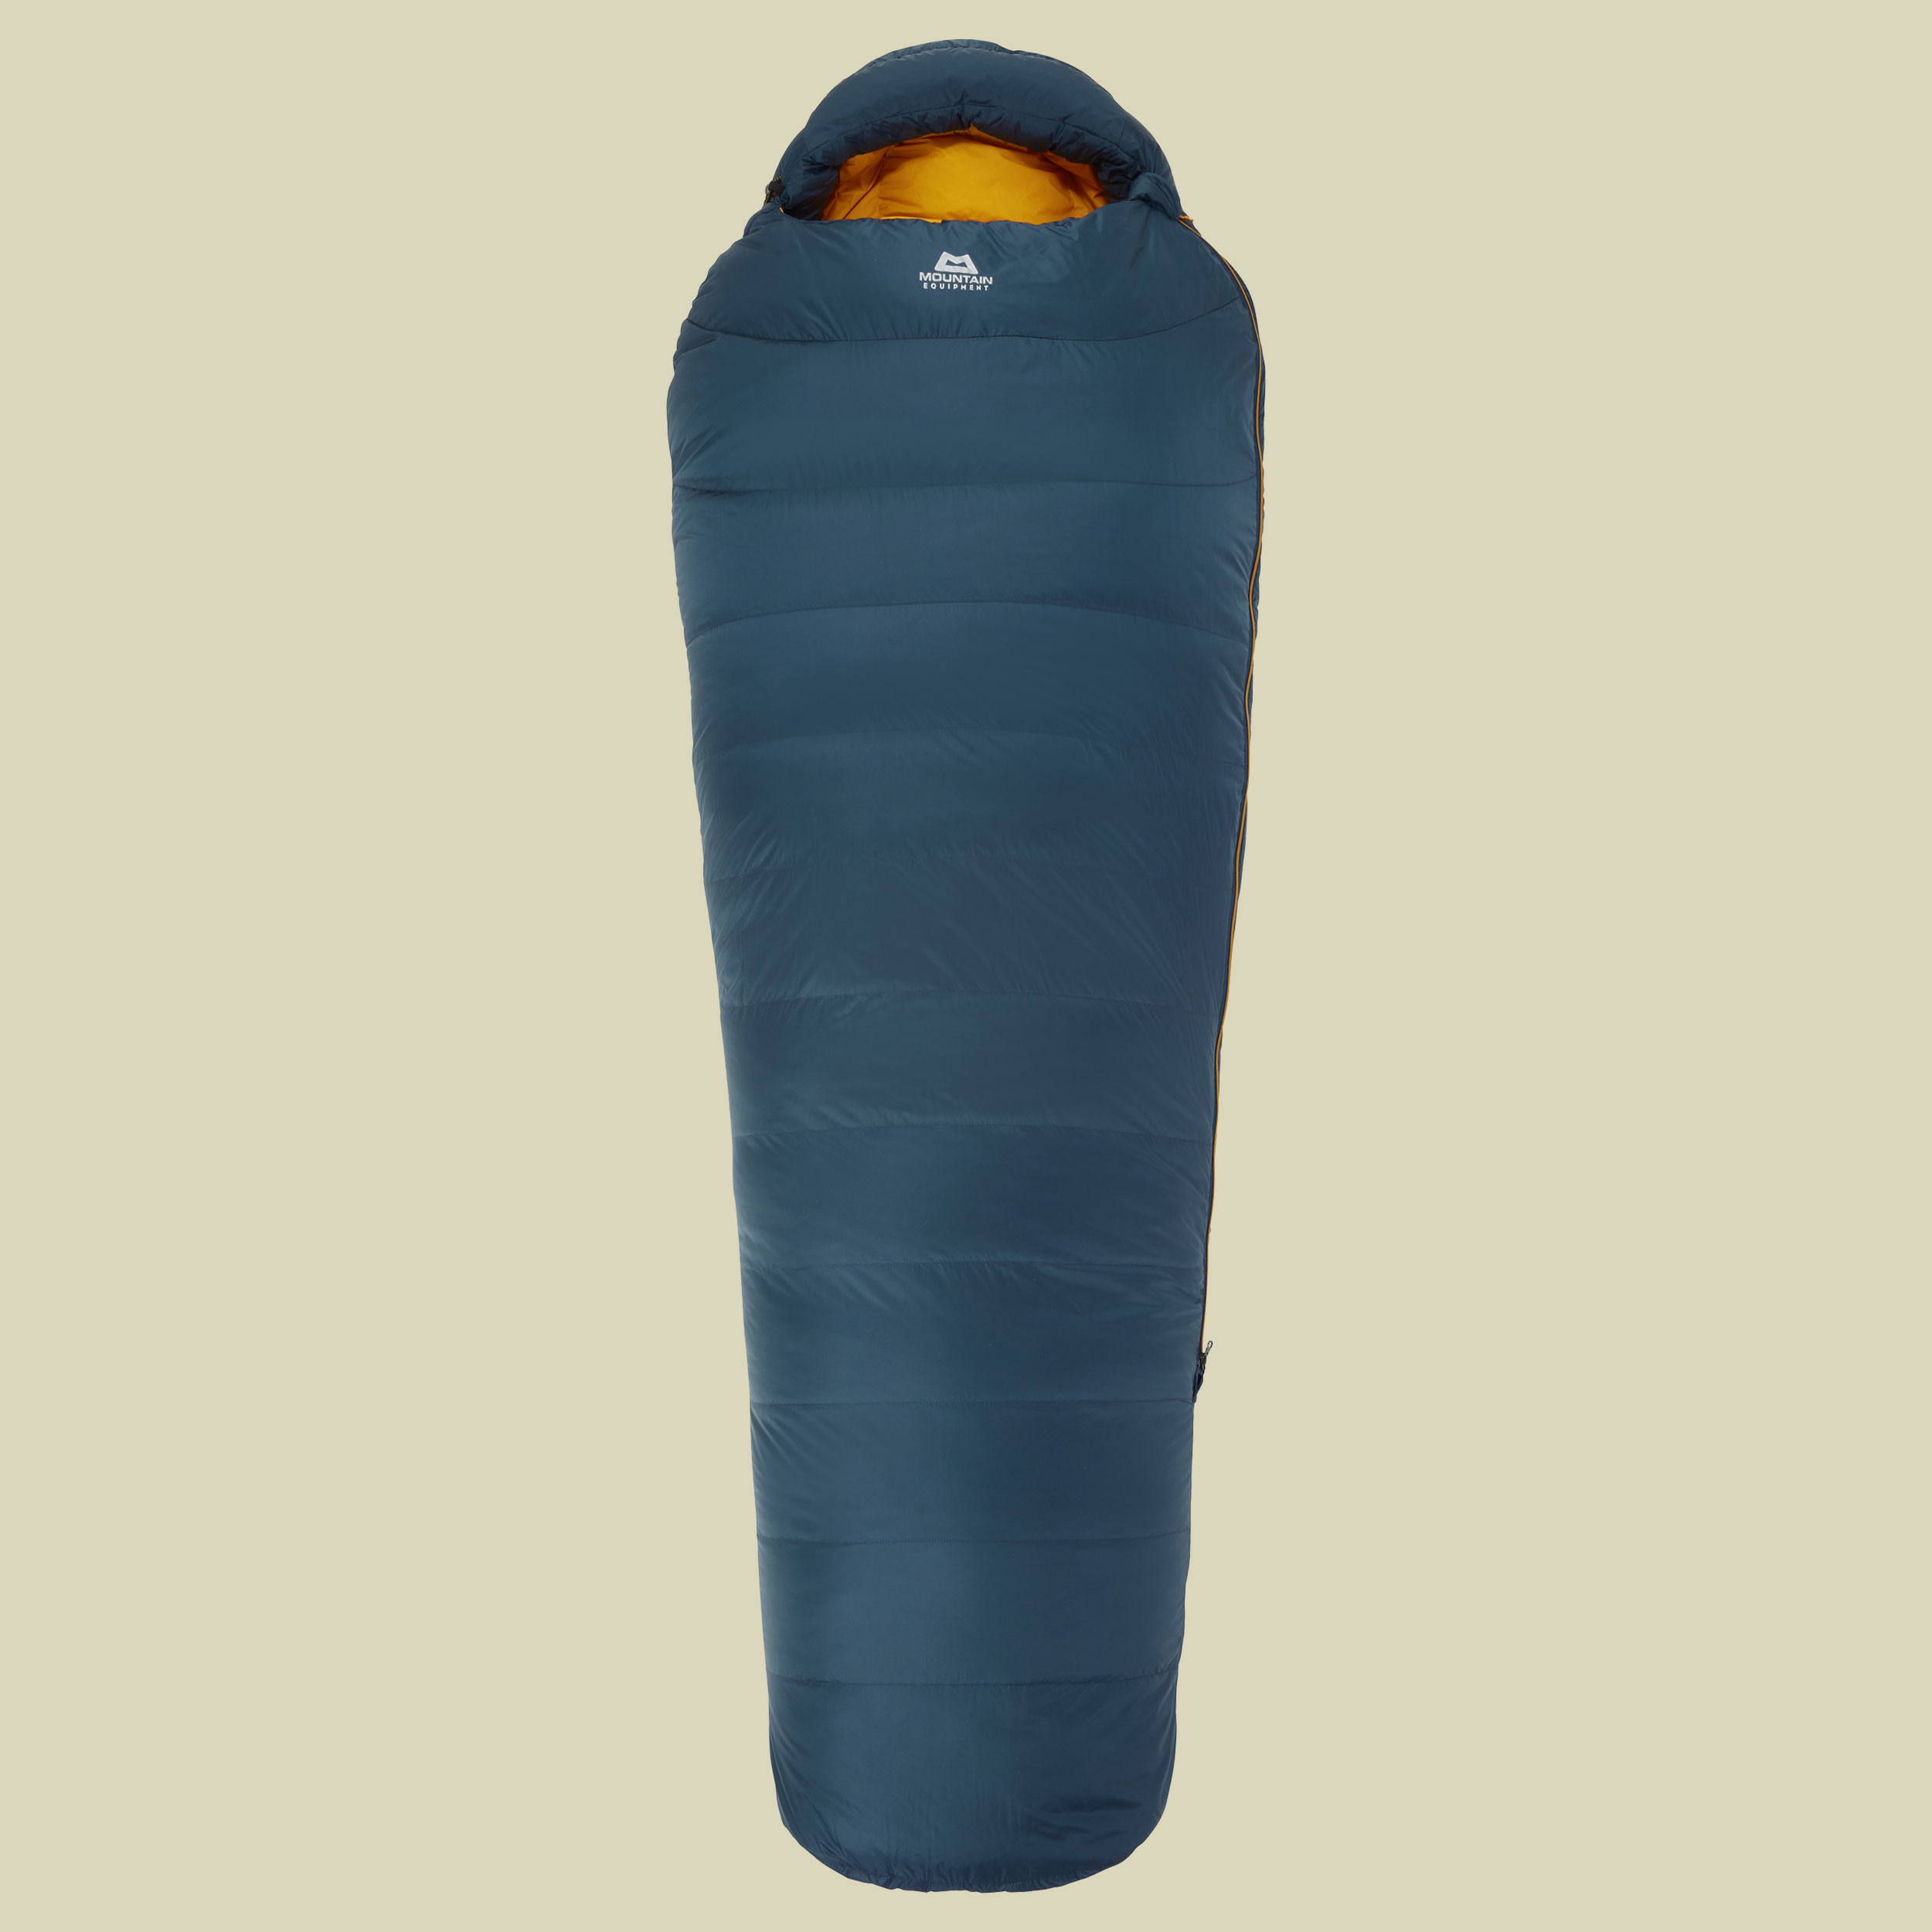 Helium 400 Schlafsack Körpergröße 185 cm majolica blue,Schlafsack Reissverschluss rechts